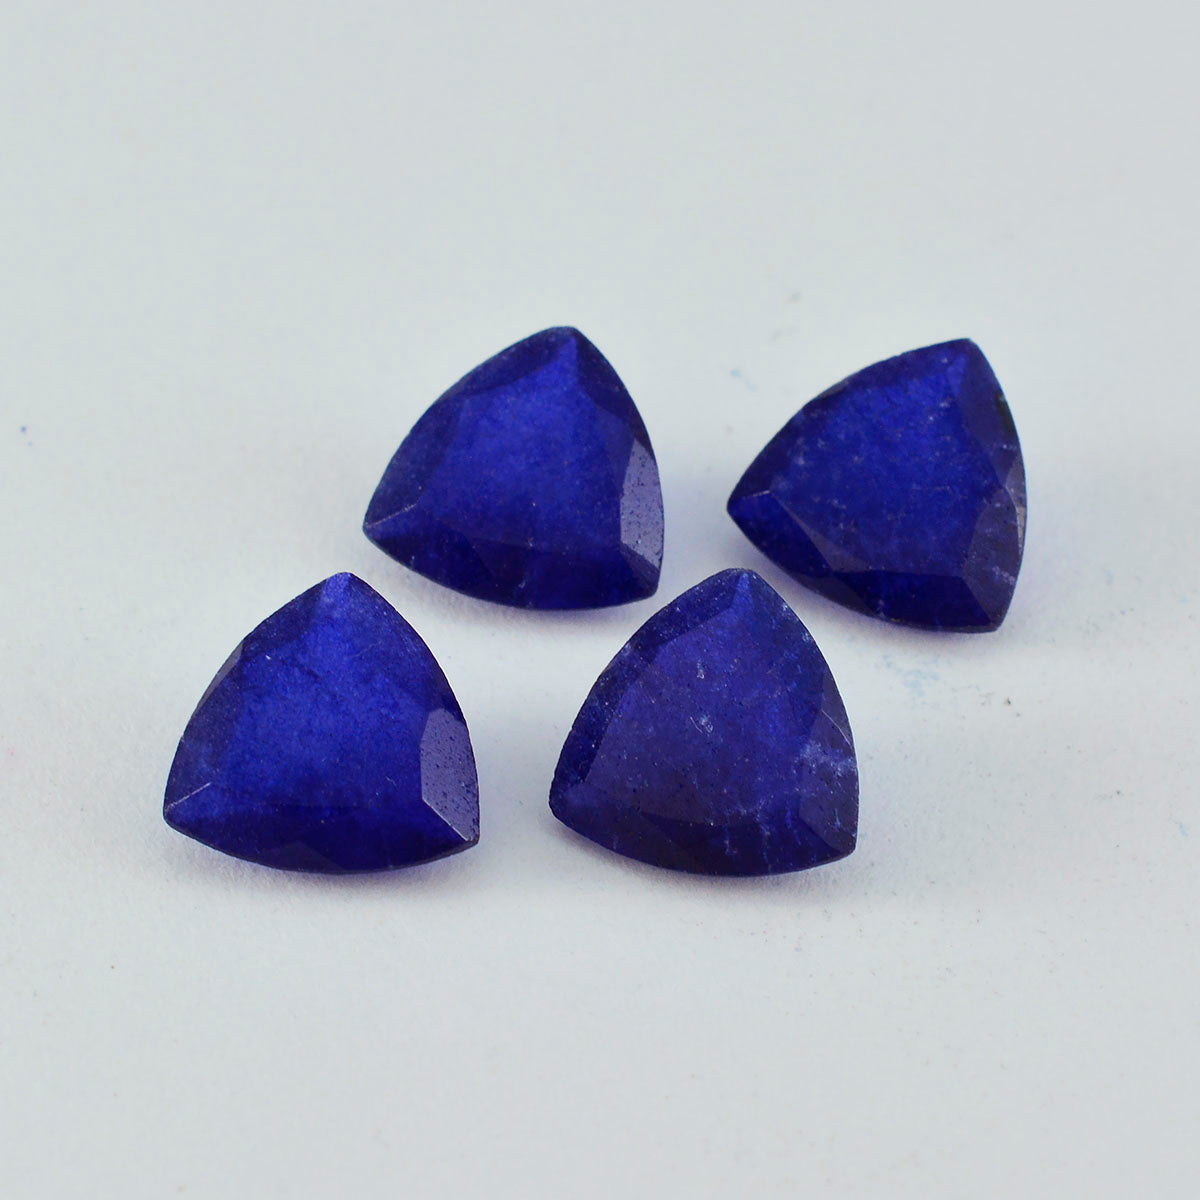 riyogems 1шт настоящая синяя яшма ограненная 10x10 мм форма триллиона драгоценный камень отличного качества